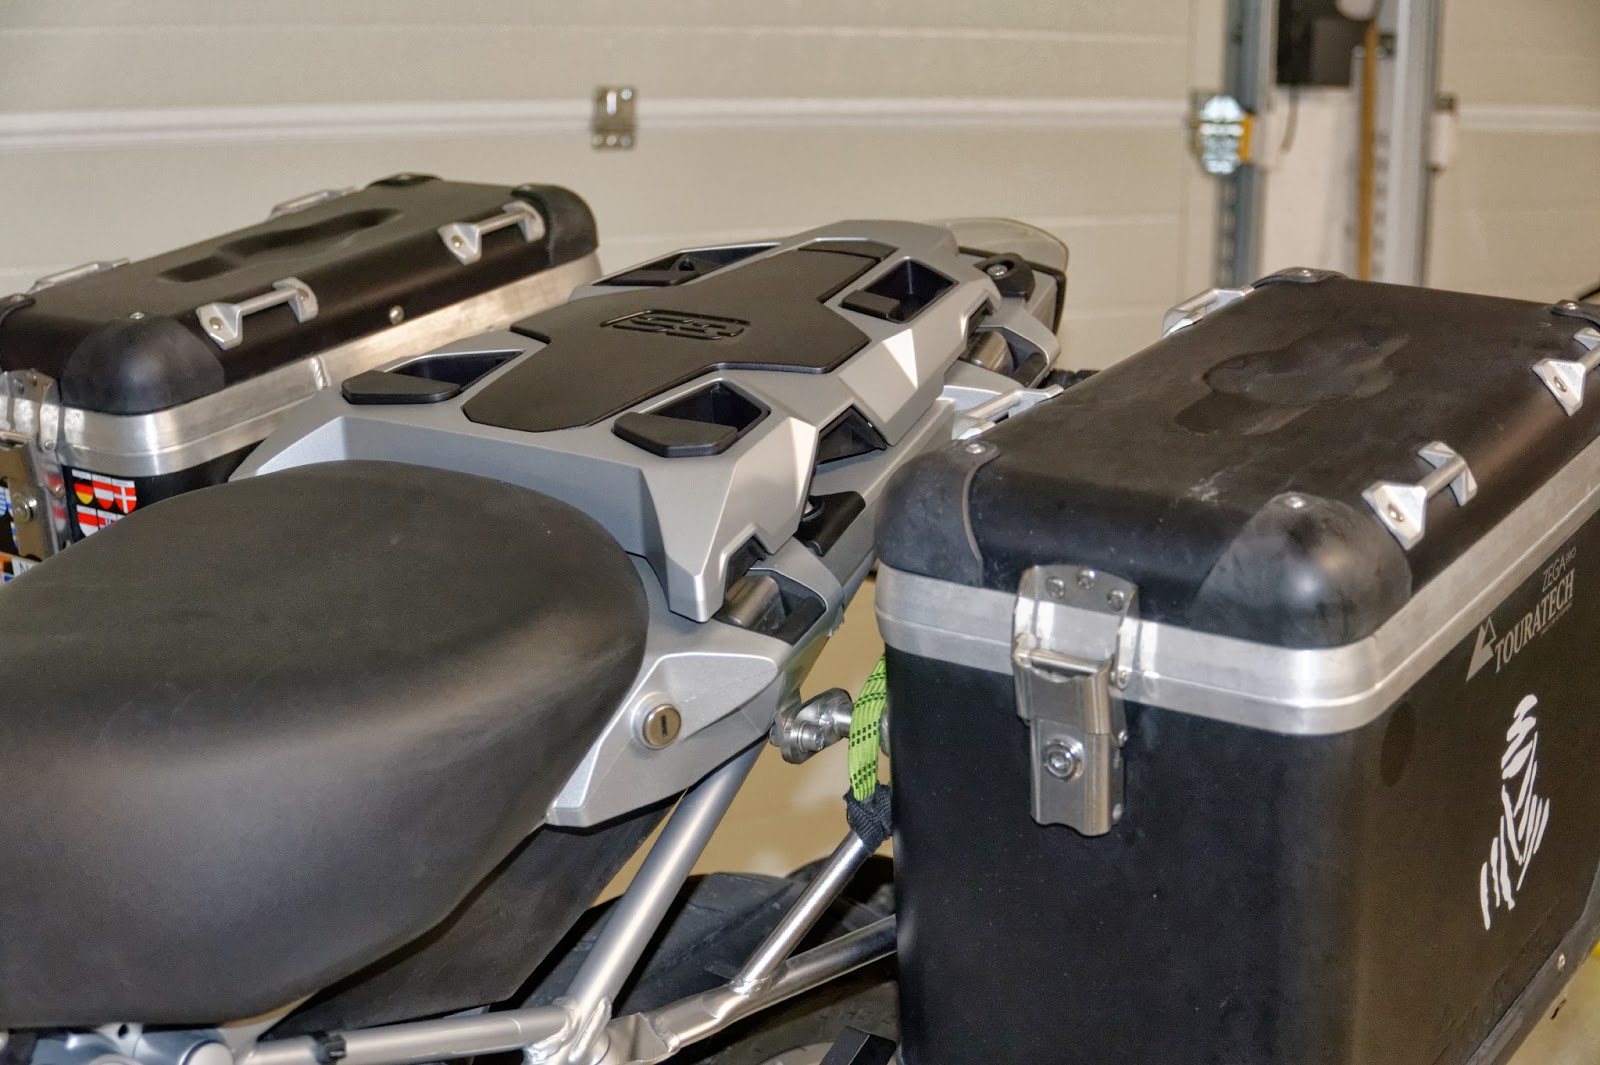 B-Stock- Porte-bagages supplémentaires adaptés aux valises BMW Vario - avec  rayures